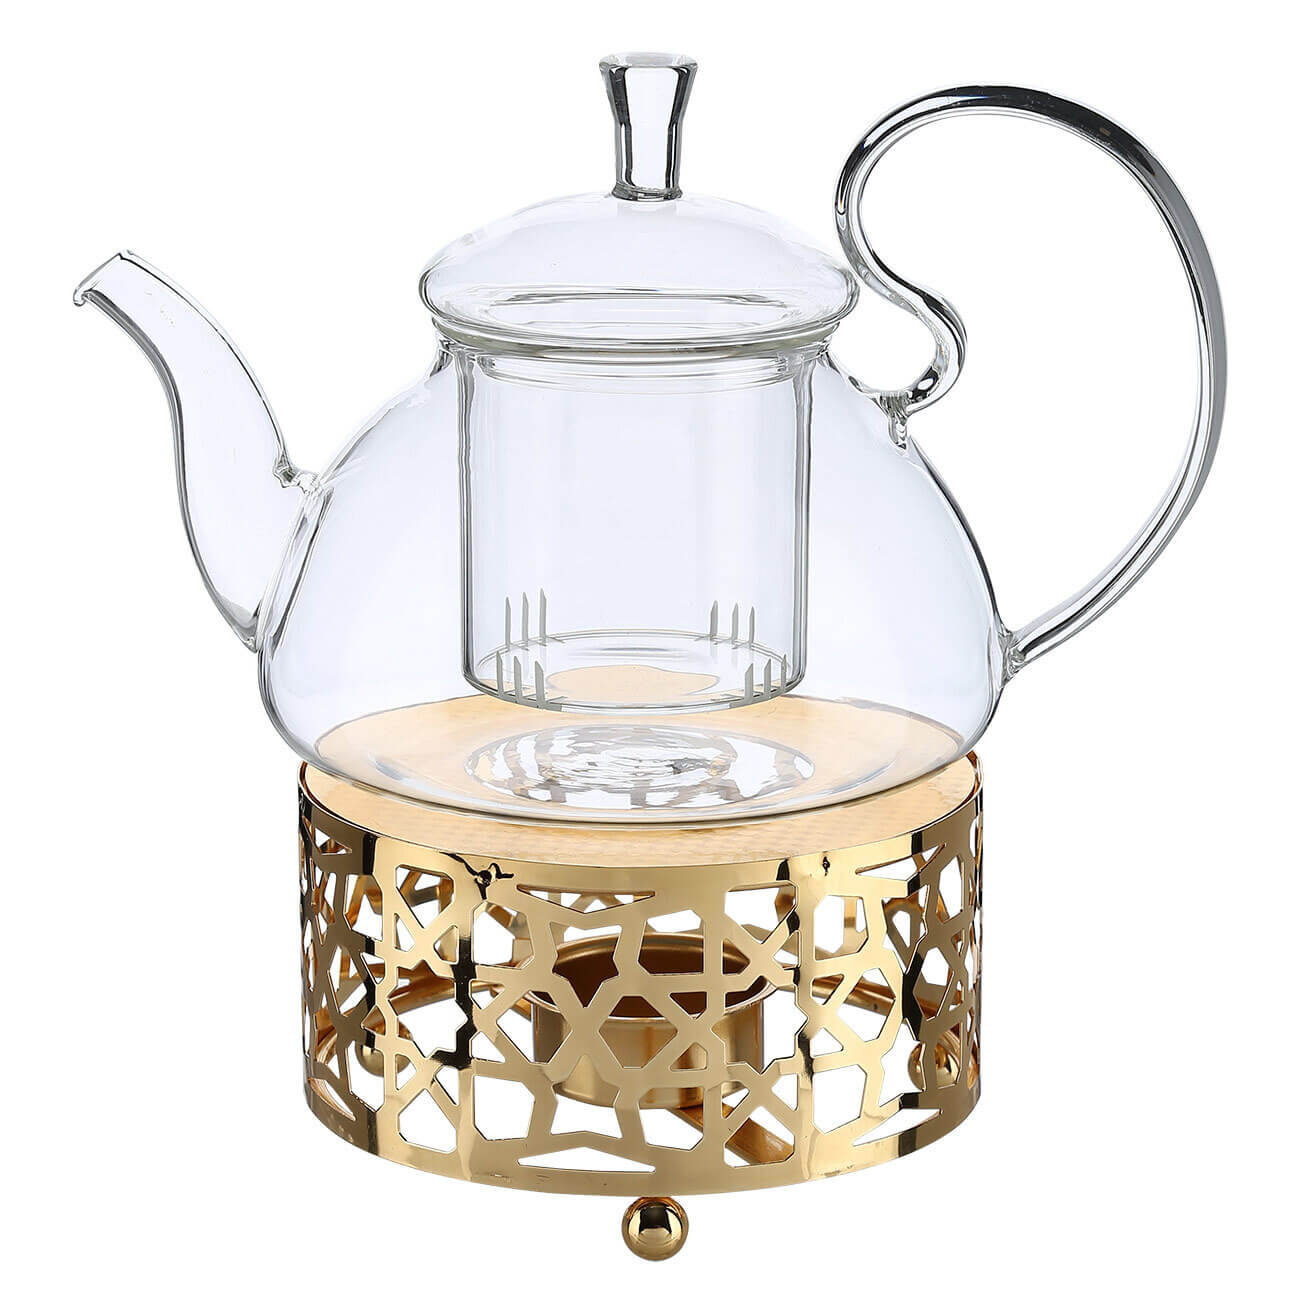 Чайник заварочный, 800 мл, с подогревом, стекло Б/металл, золотистый, Ellan чайник заварочный 650 мл стекло б glacier